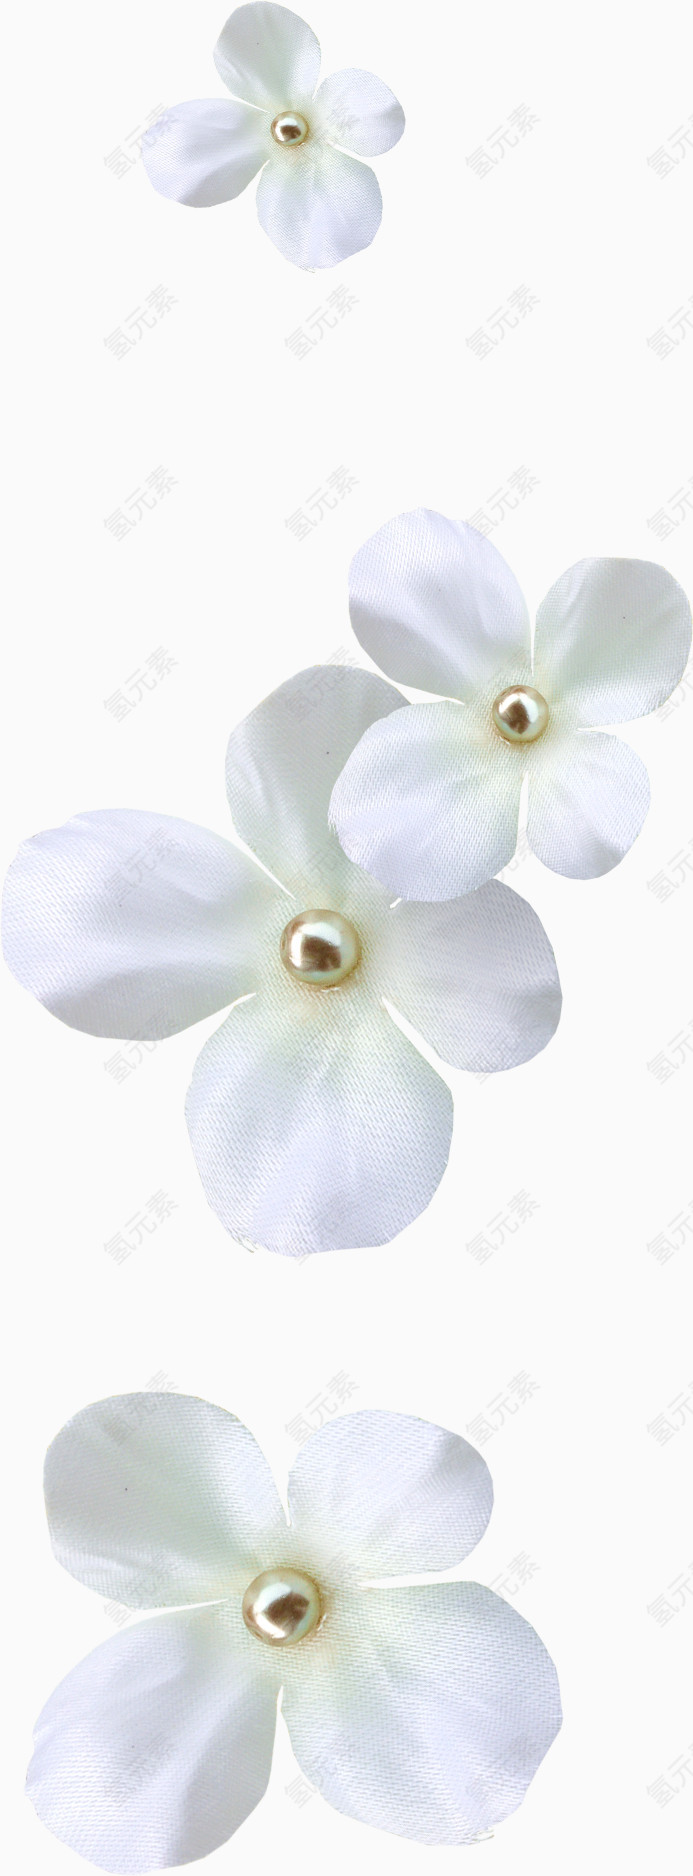 白色漂亮装饰花朵